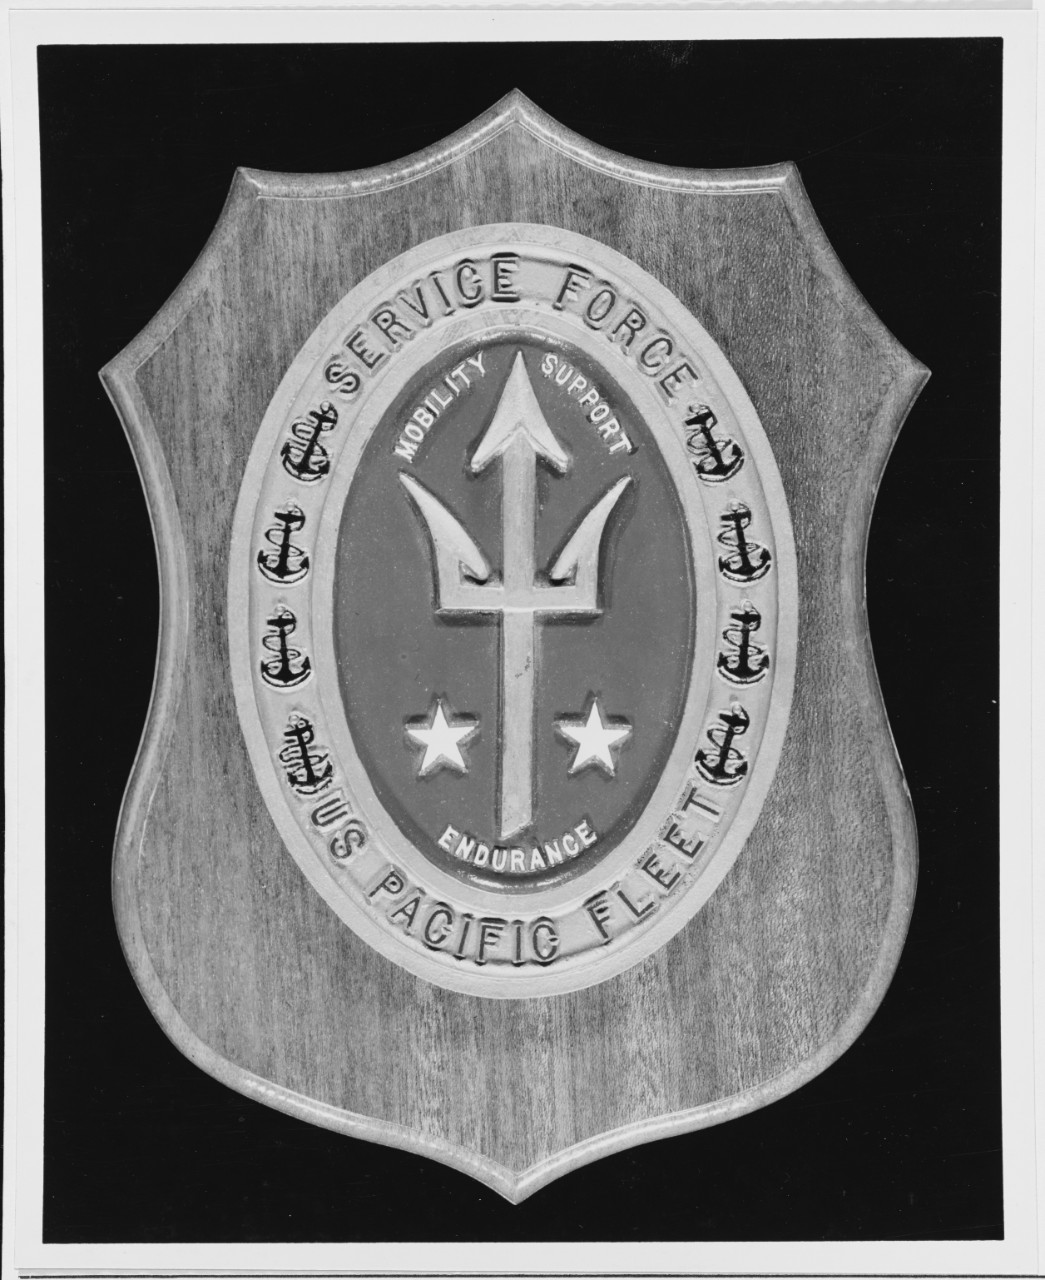 Commander service force U.S. Pacific fleet